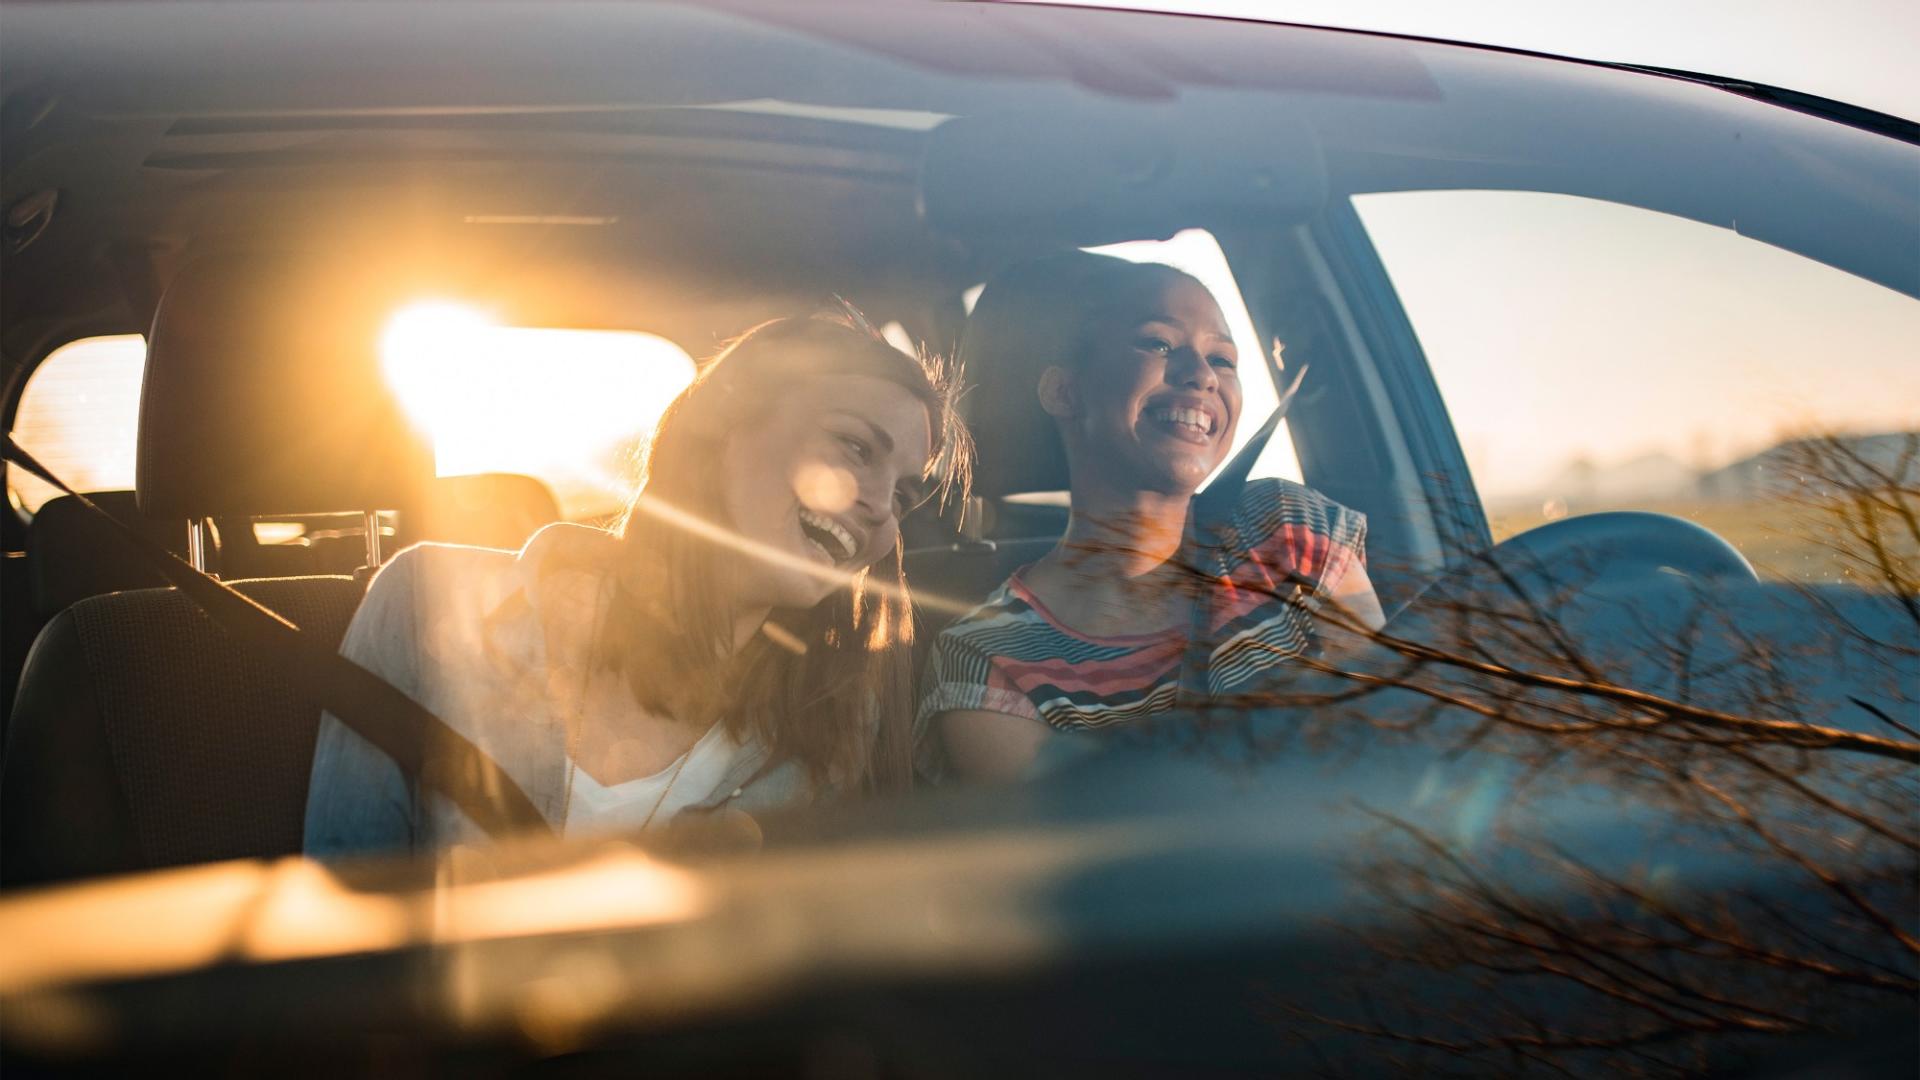 Vater und Sohn sitzen im Kofferraum eines Autos, welches im Wald steht.